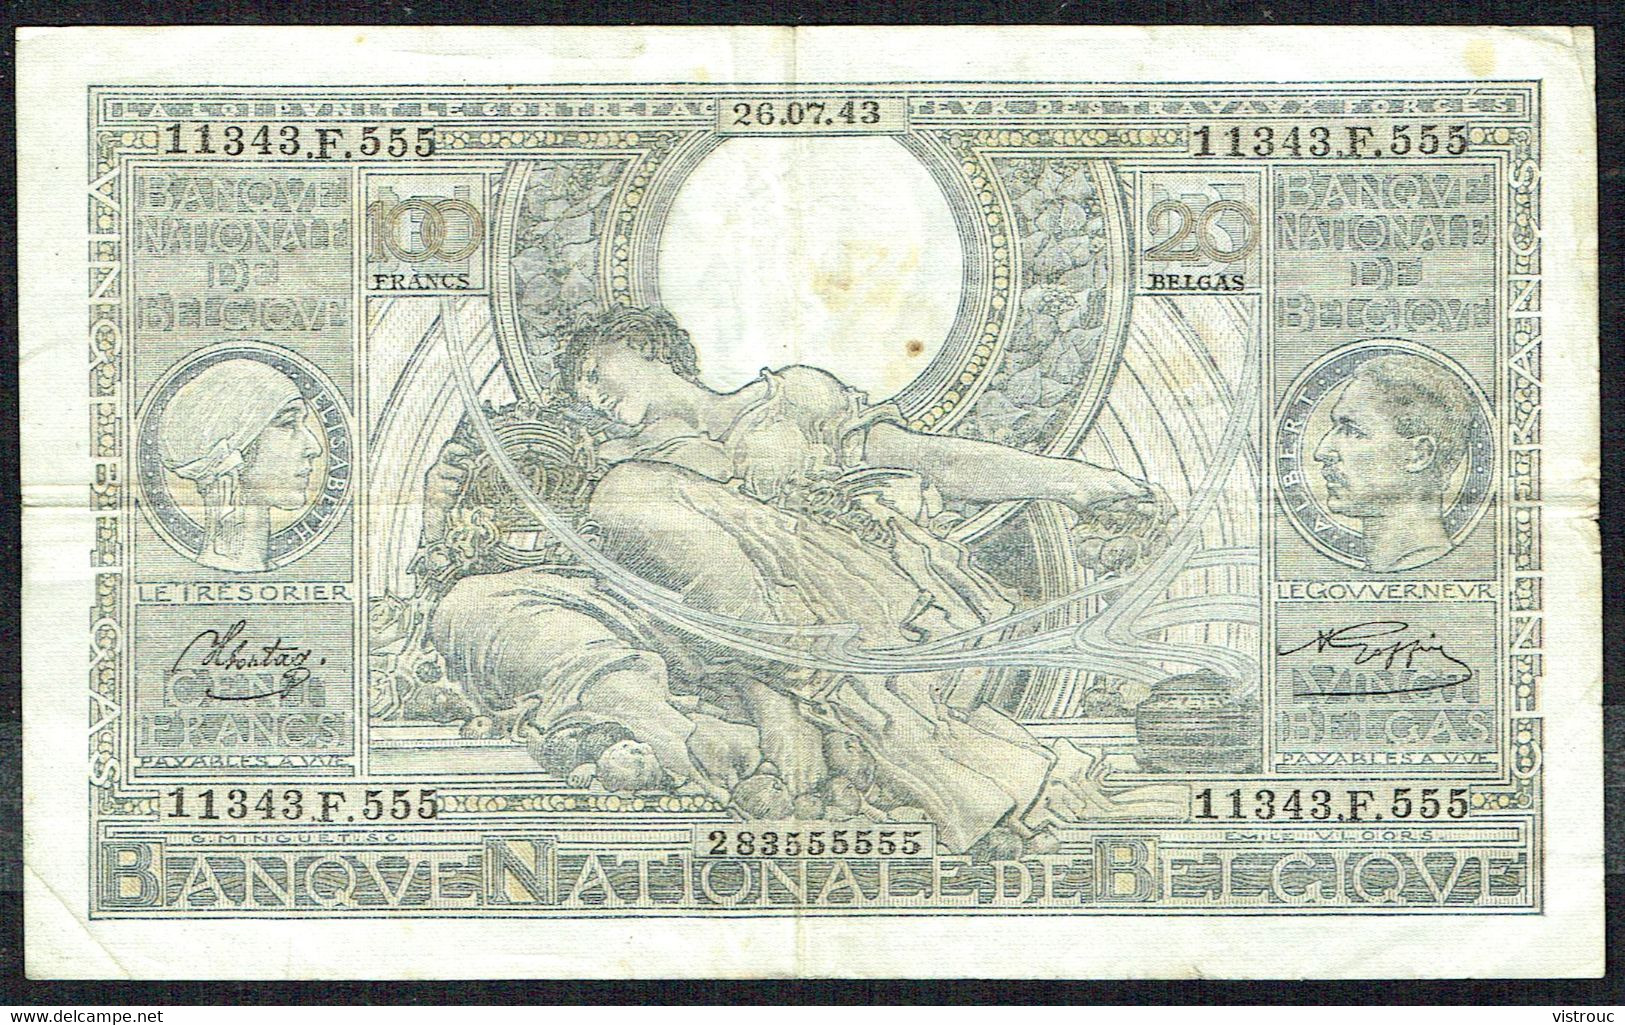 BELGIQUE - 100 Francs / 20 BELGAS - 26/07/1943 - N° 11343.F.555 - 100 Frank & 100 Frank-20 Belgas